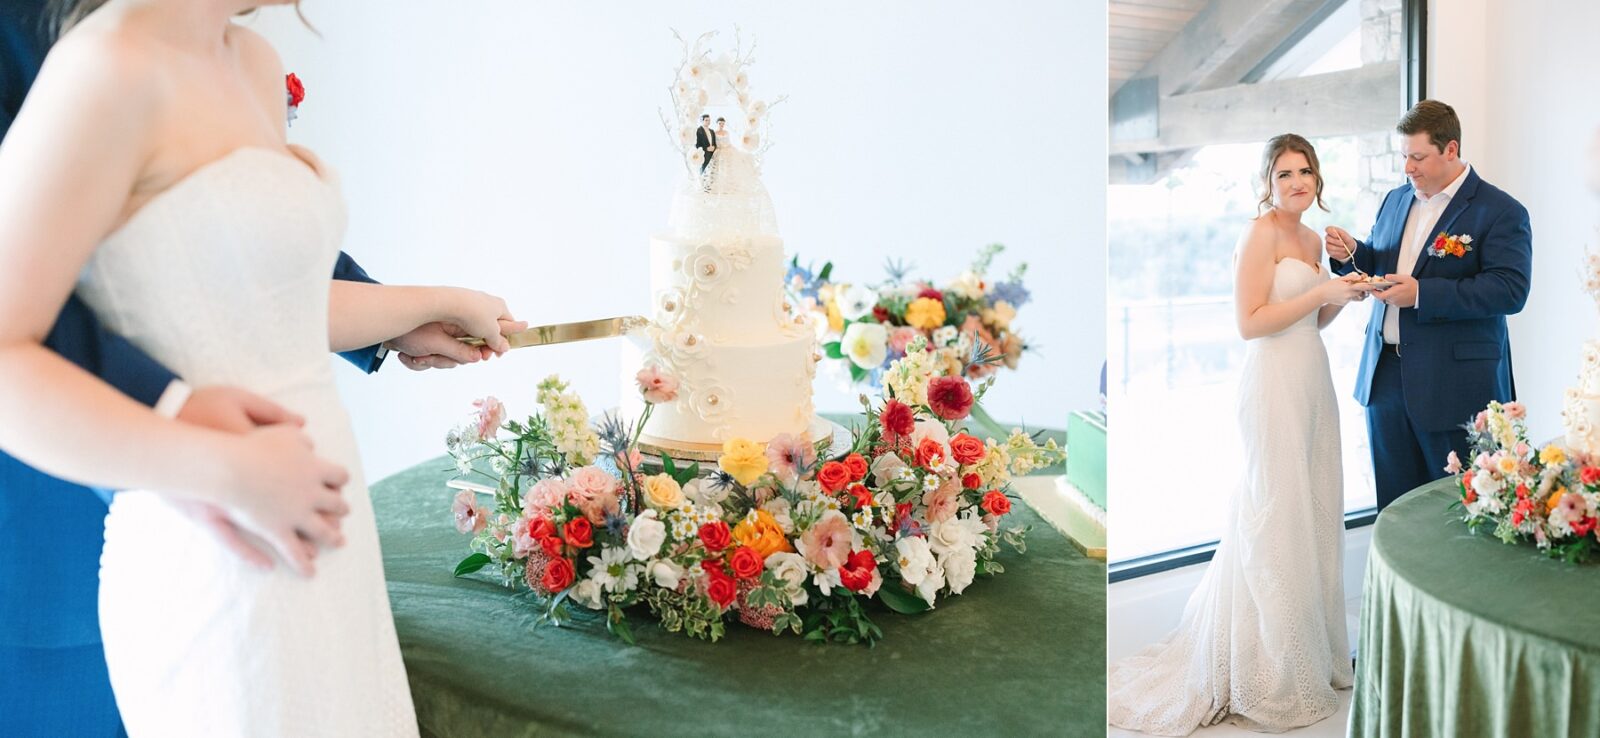 2tarts wedding cake, 2tarts bakery, perry's petals